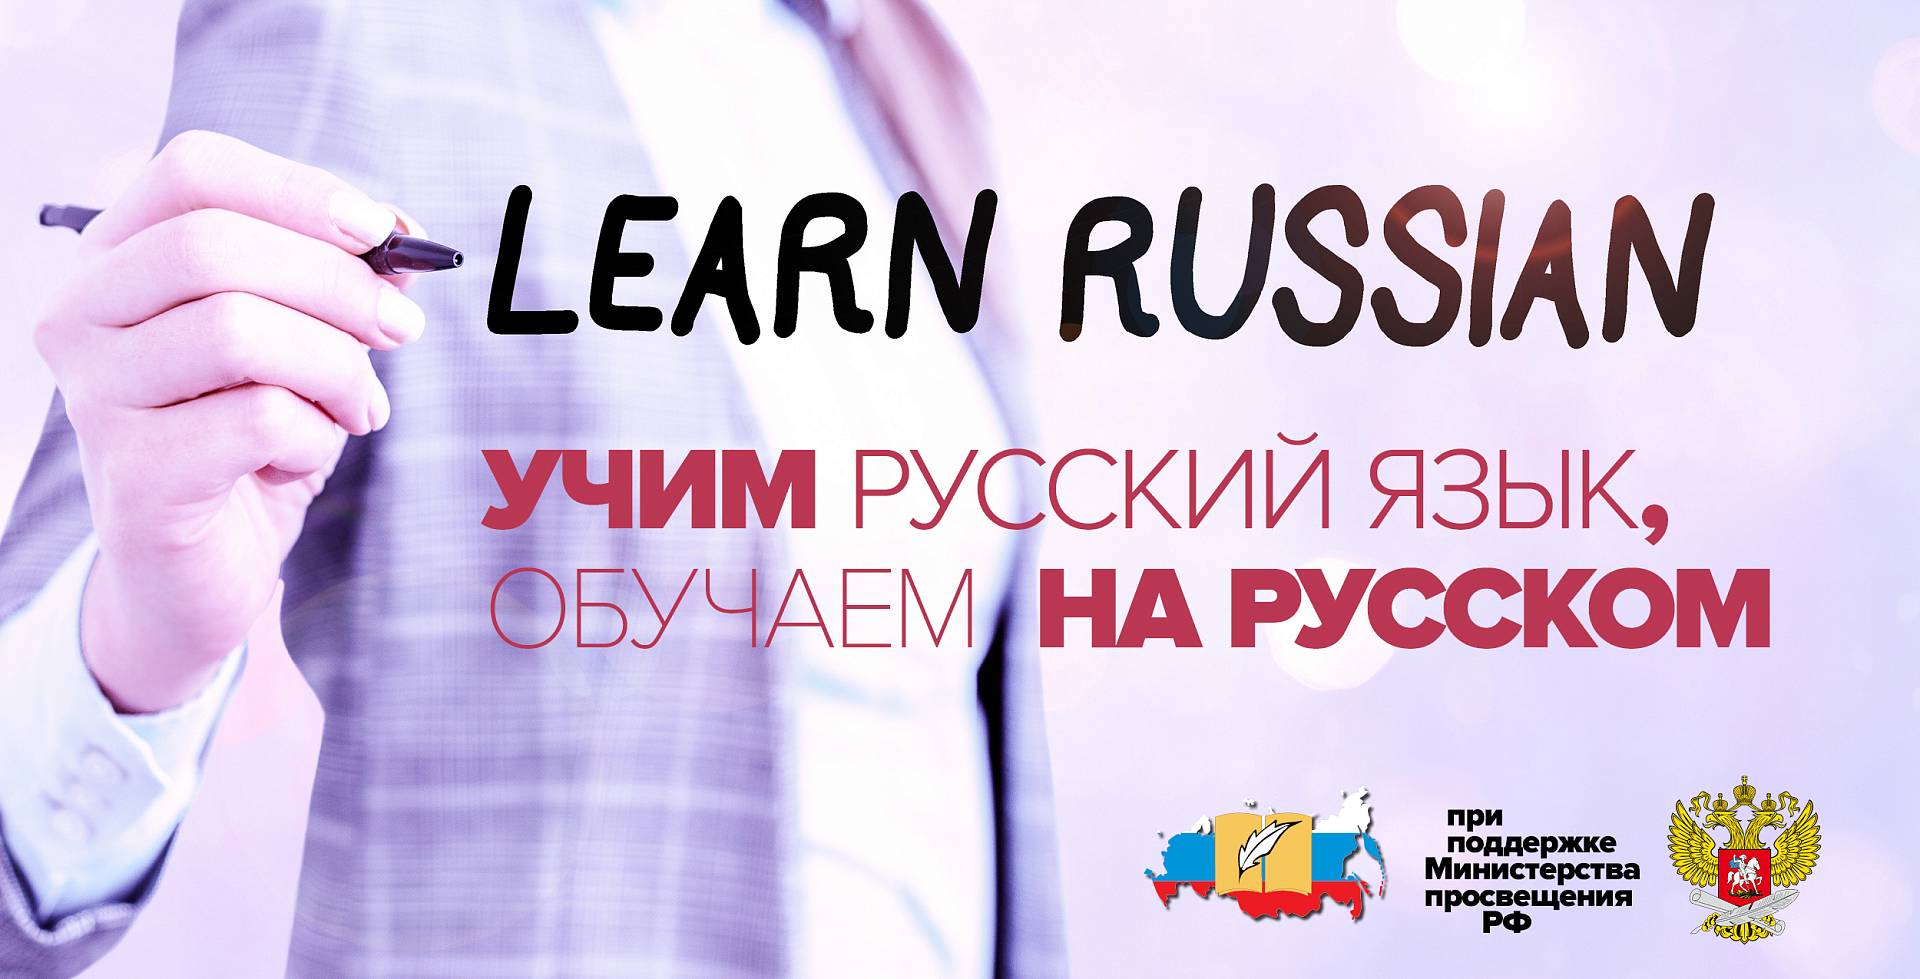 Учим русский язык, обучаем на русском